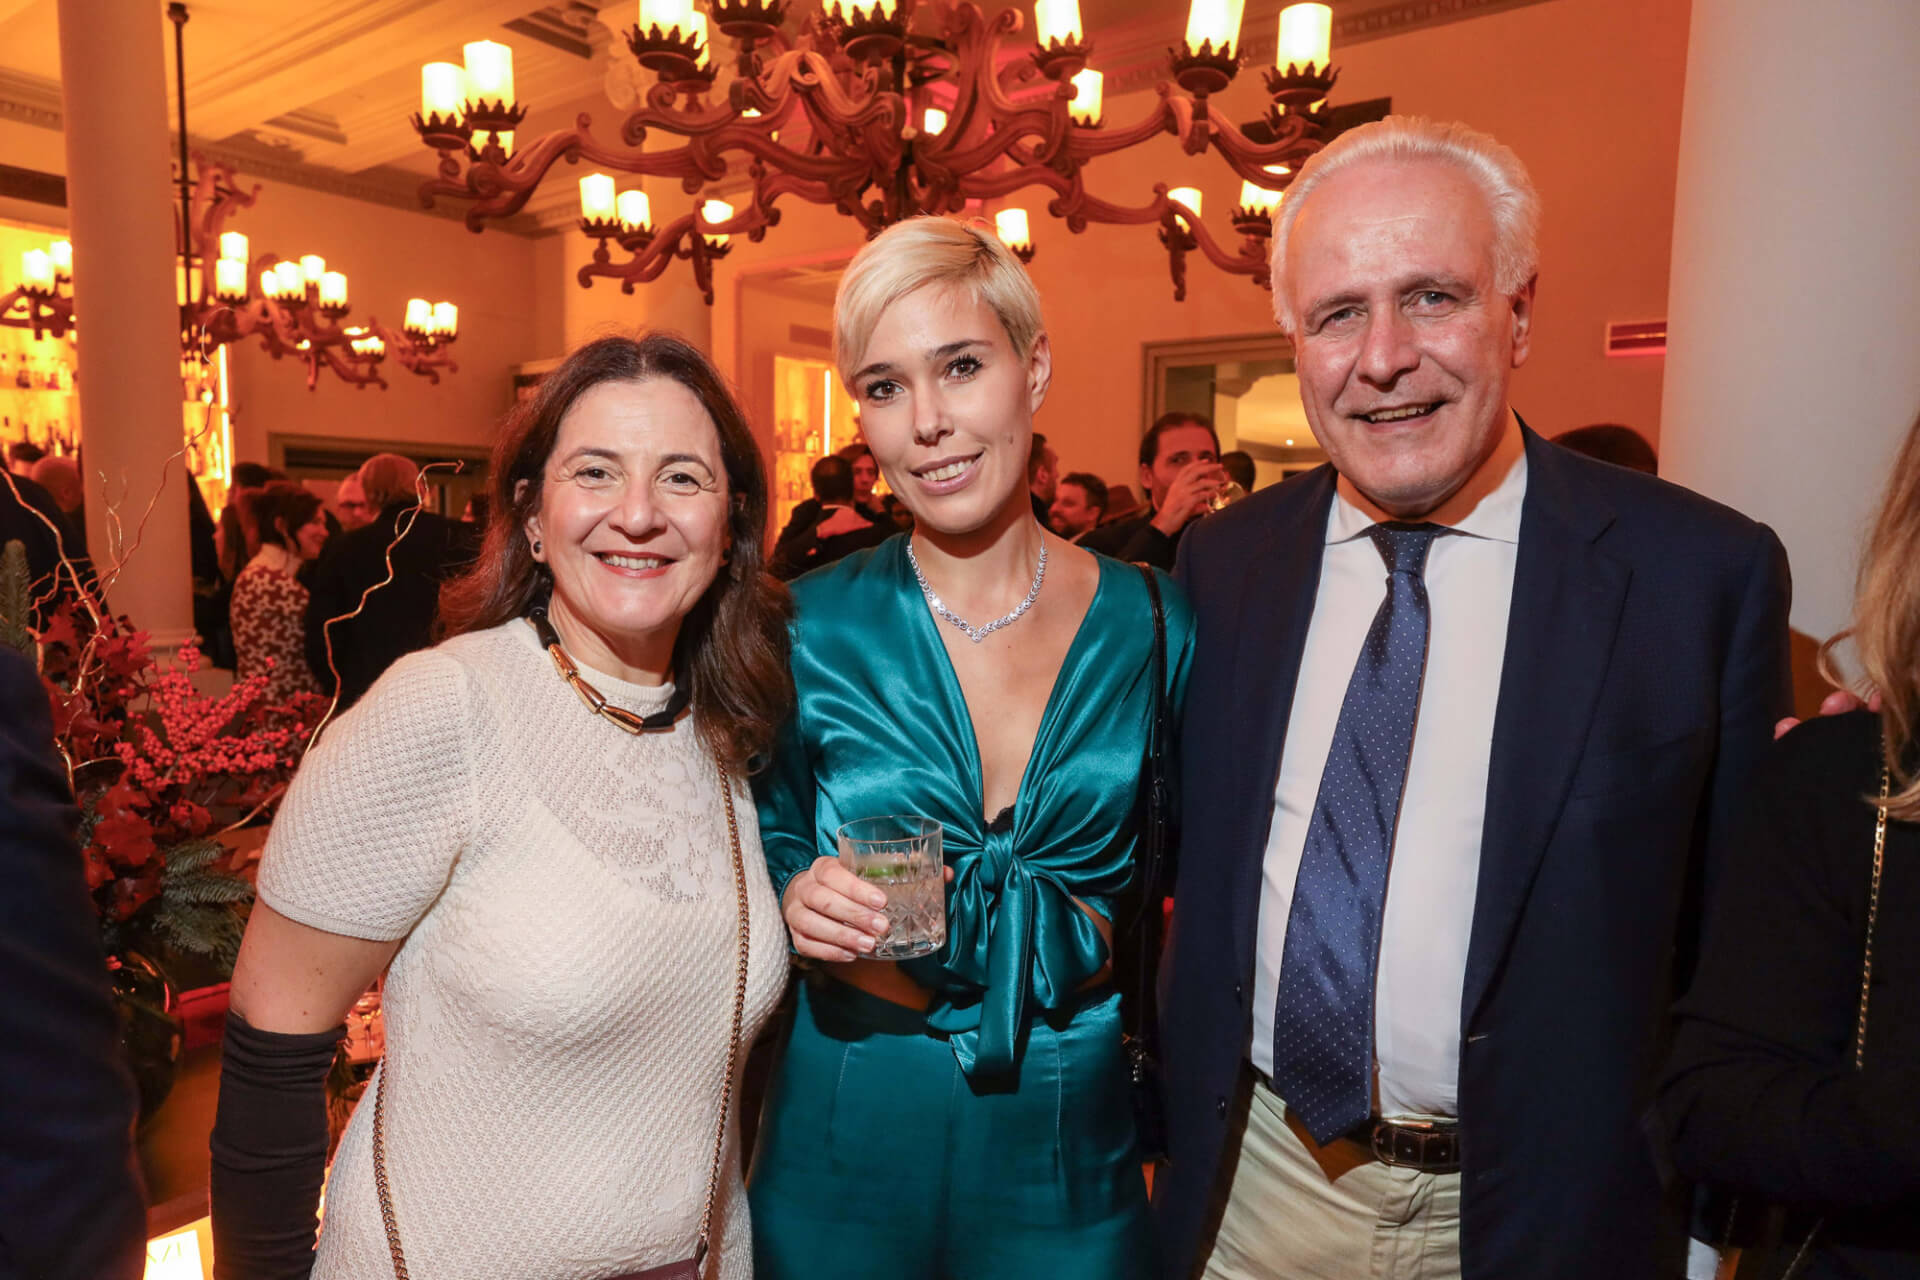 Cristina Giachi, Giulia Mazzoni, Eugenio Giani